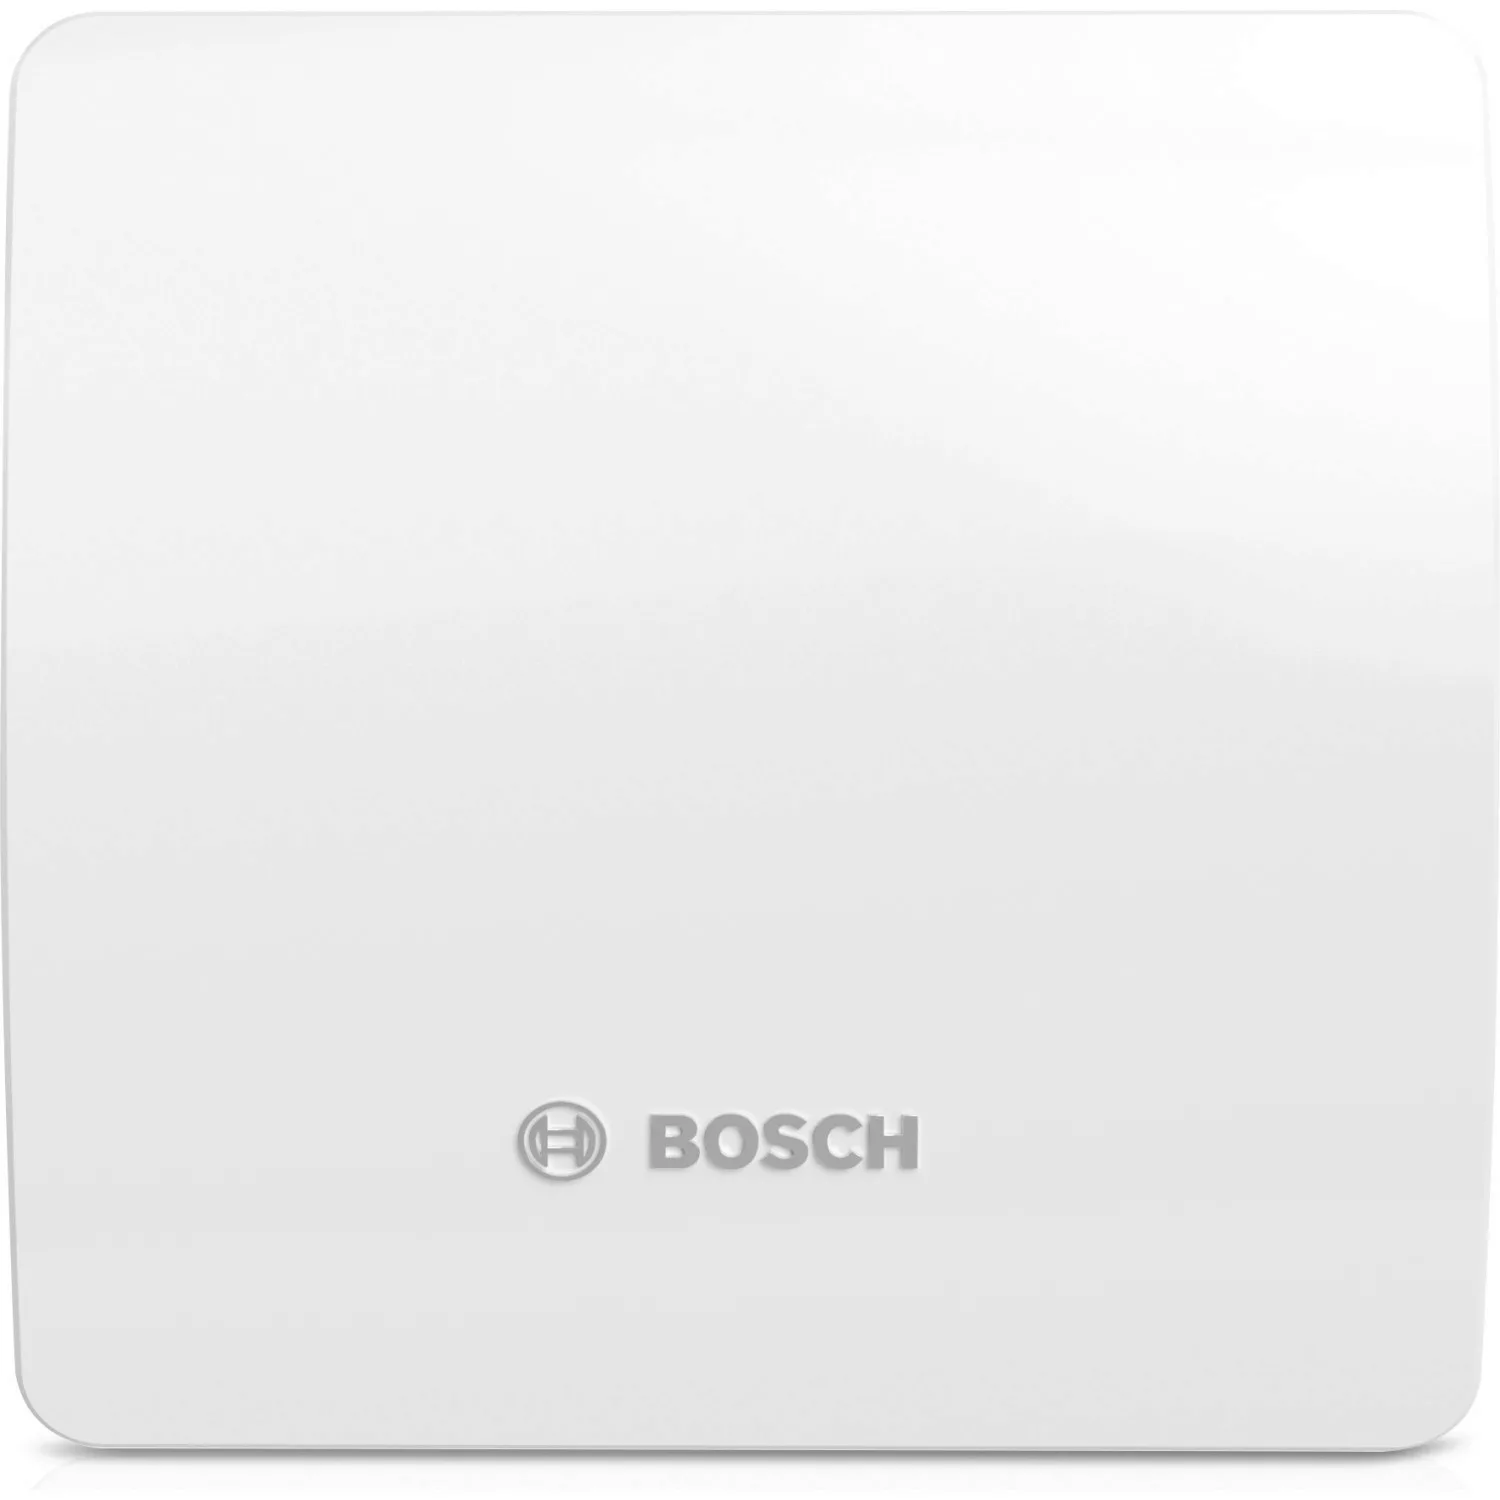 Bosch Badventilator Fan 1500 DH W 100 mit Luftfeuchtesensor Weiß-Glänzend günstig online kaufen